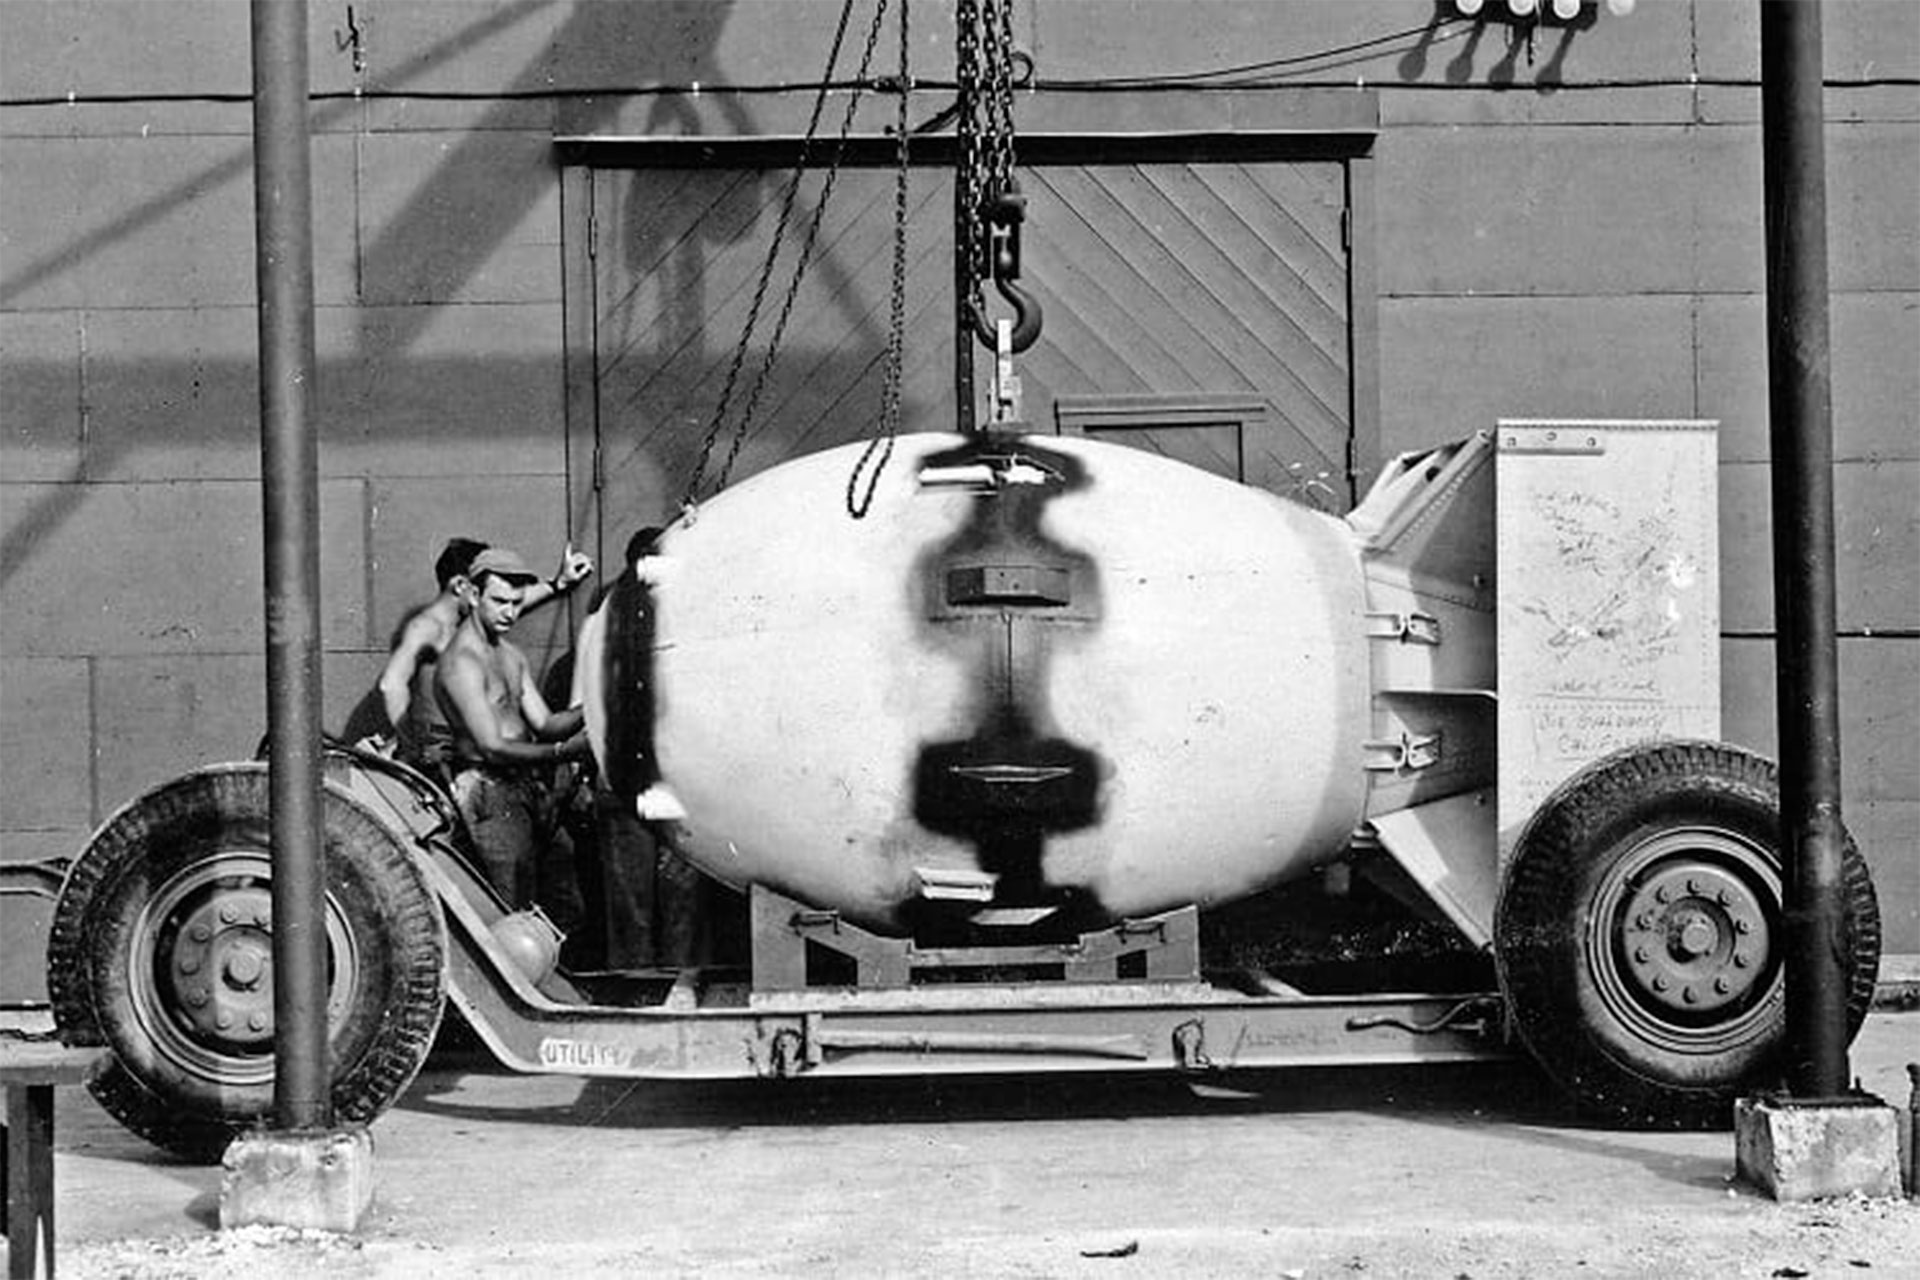 Bomba atómica "Fat Man", producida como parte del Proyecto Manhattan. US War Department